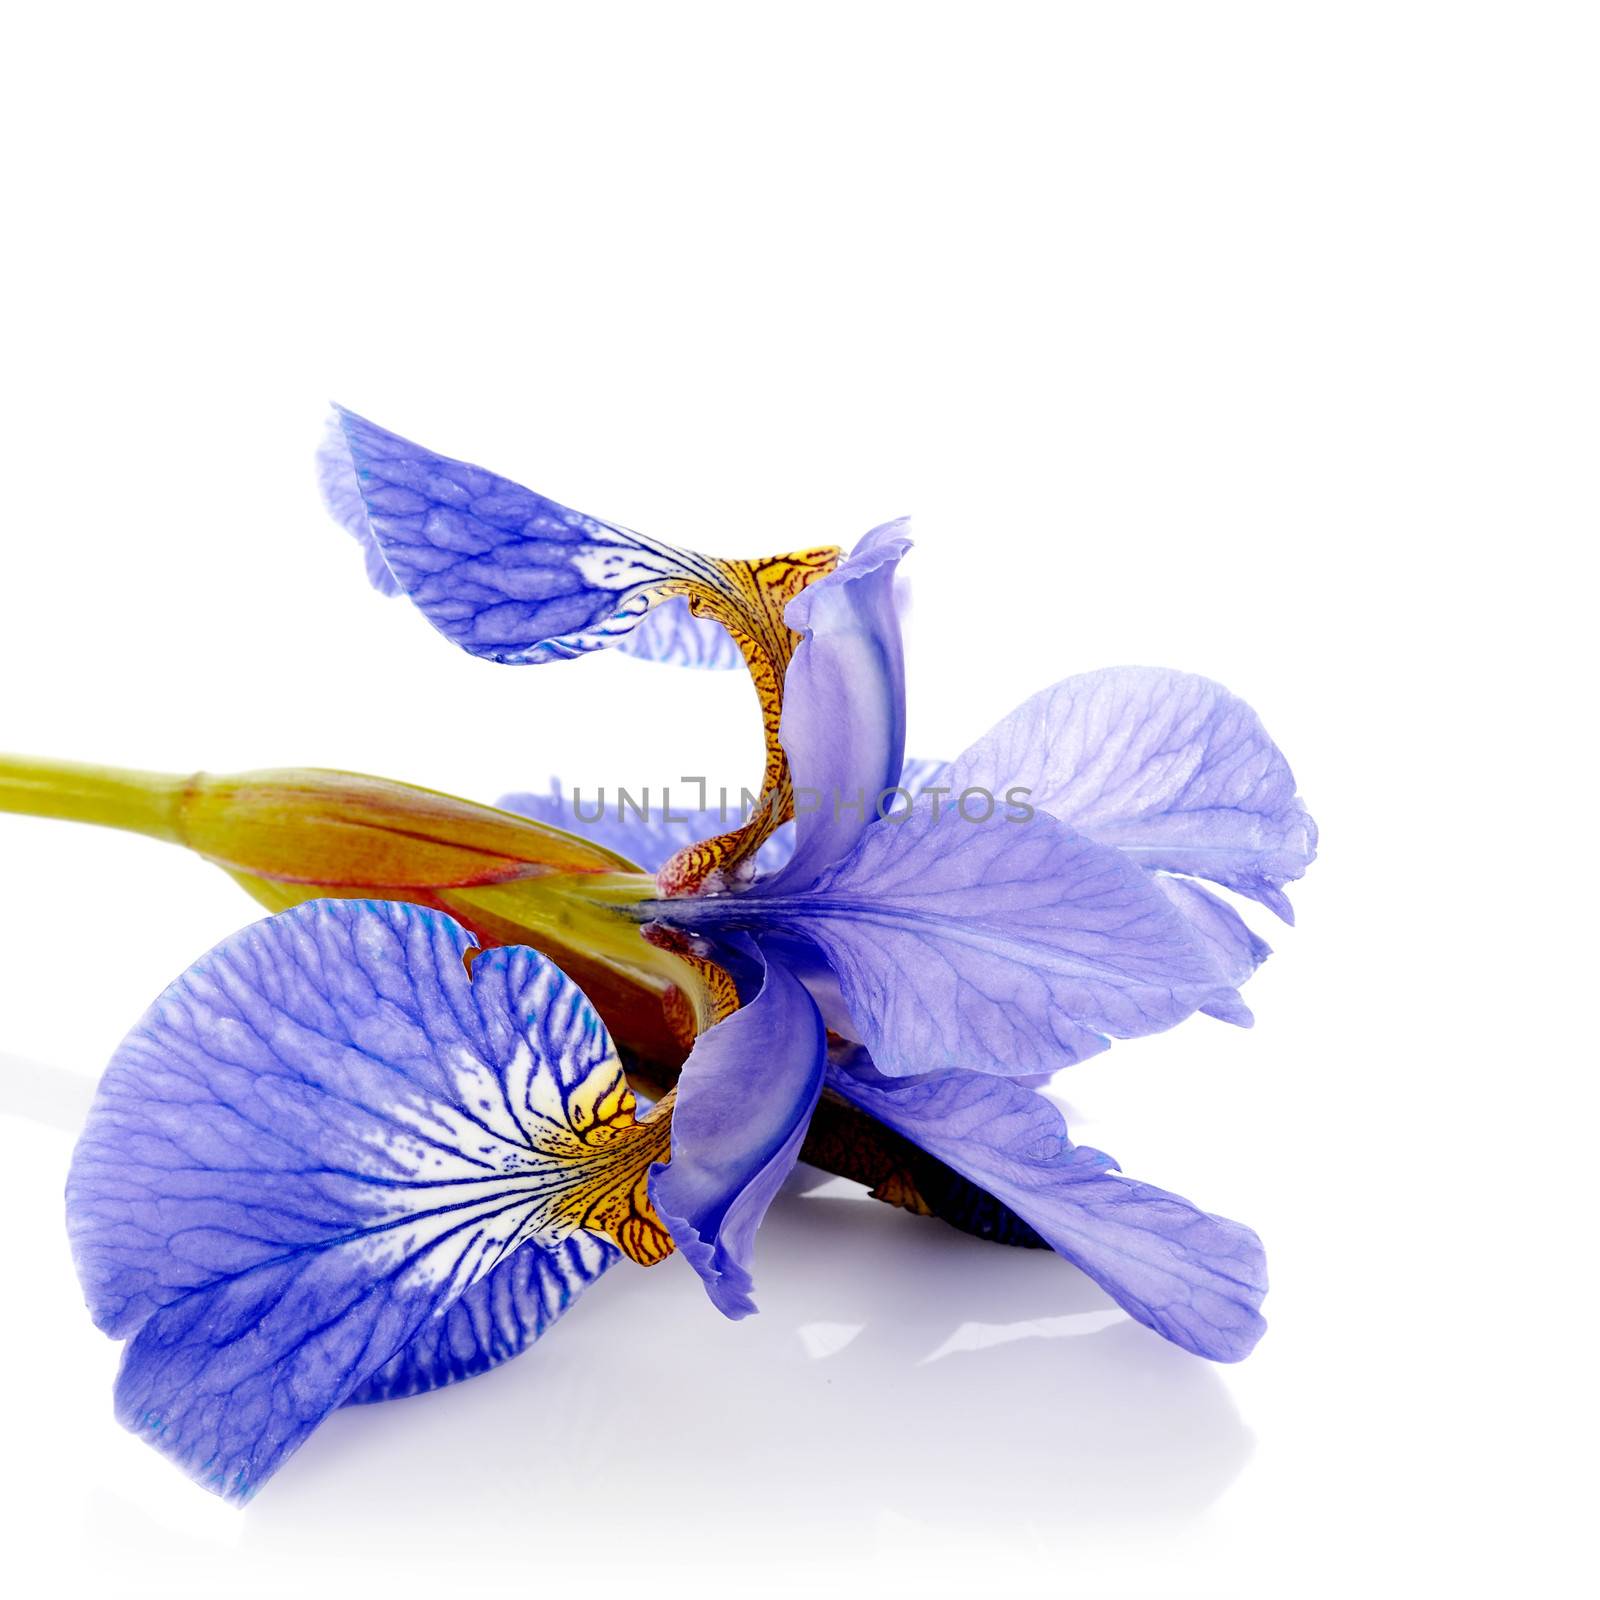 Iris flower. Blue iris. Petals of a  flower of an iris. Flower in dew drops. Flower petals in dew drops.